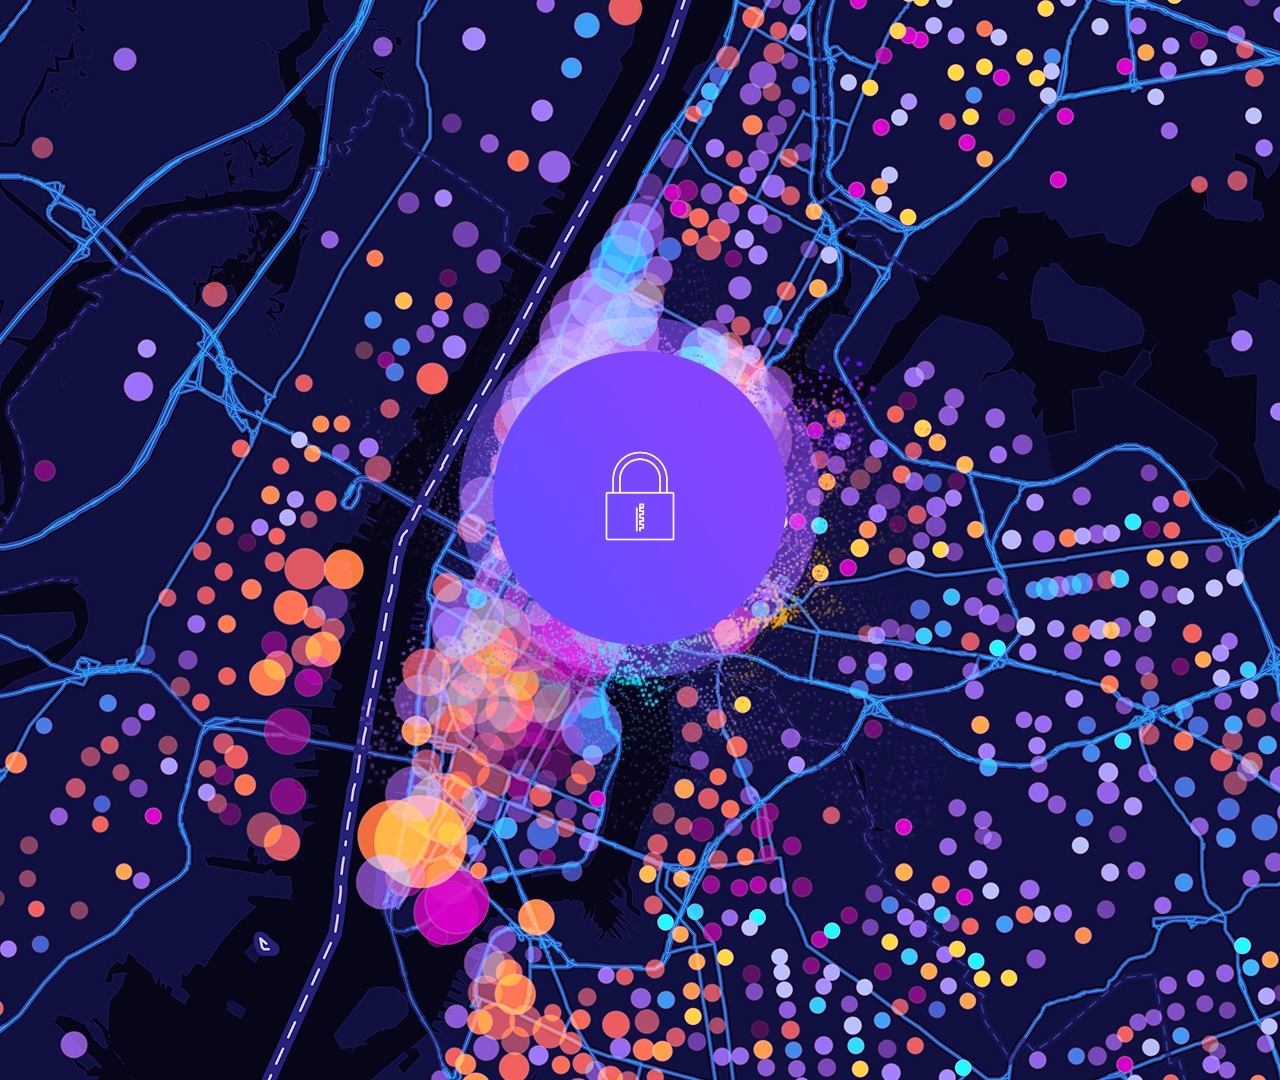 Значок замка и цифровая карта улиц с фиолетовыми, желтыми и розовыми круглыми точками данных 